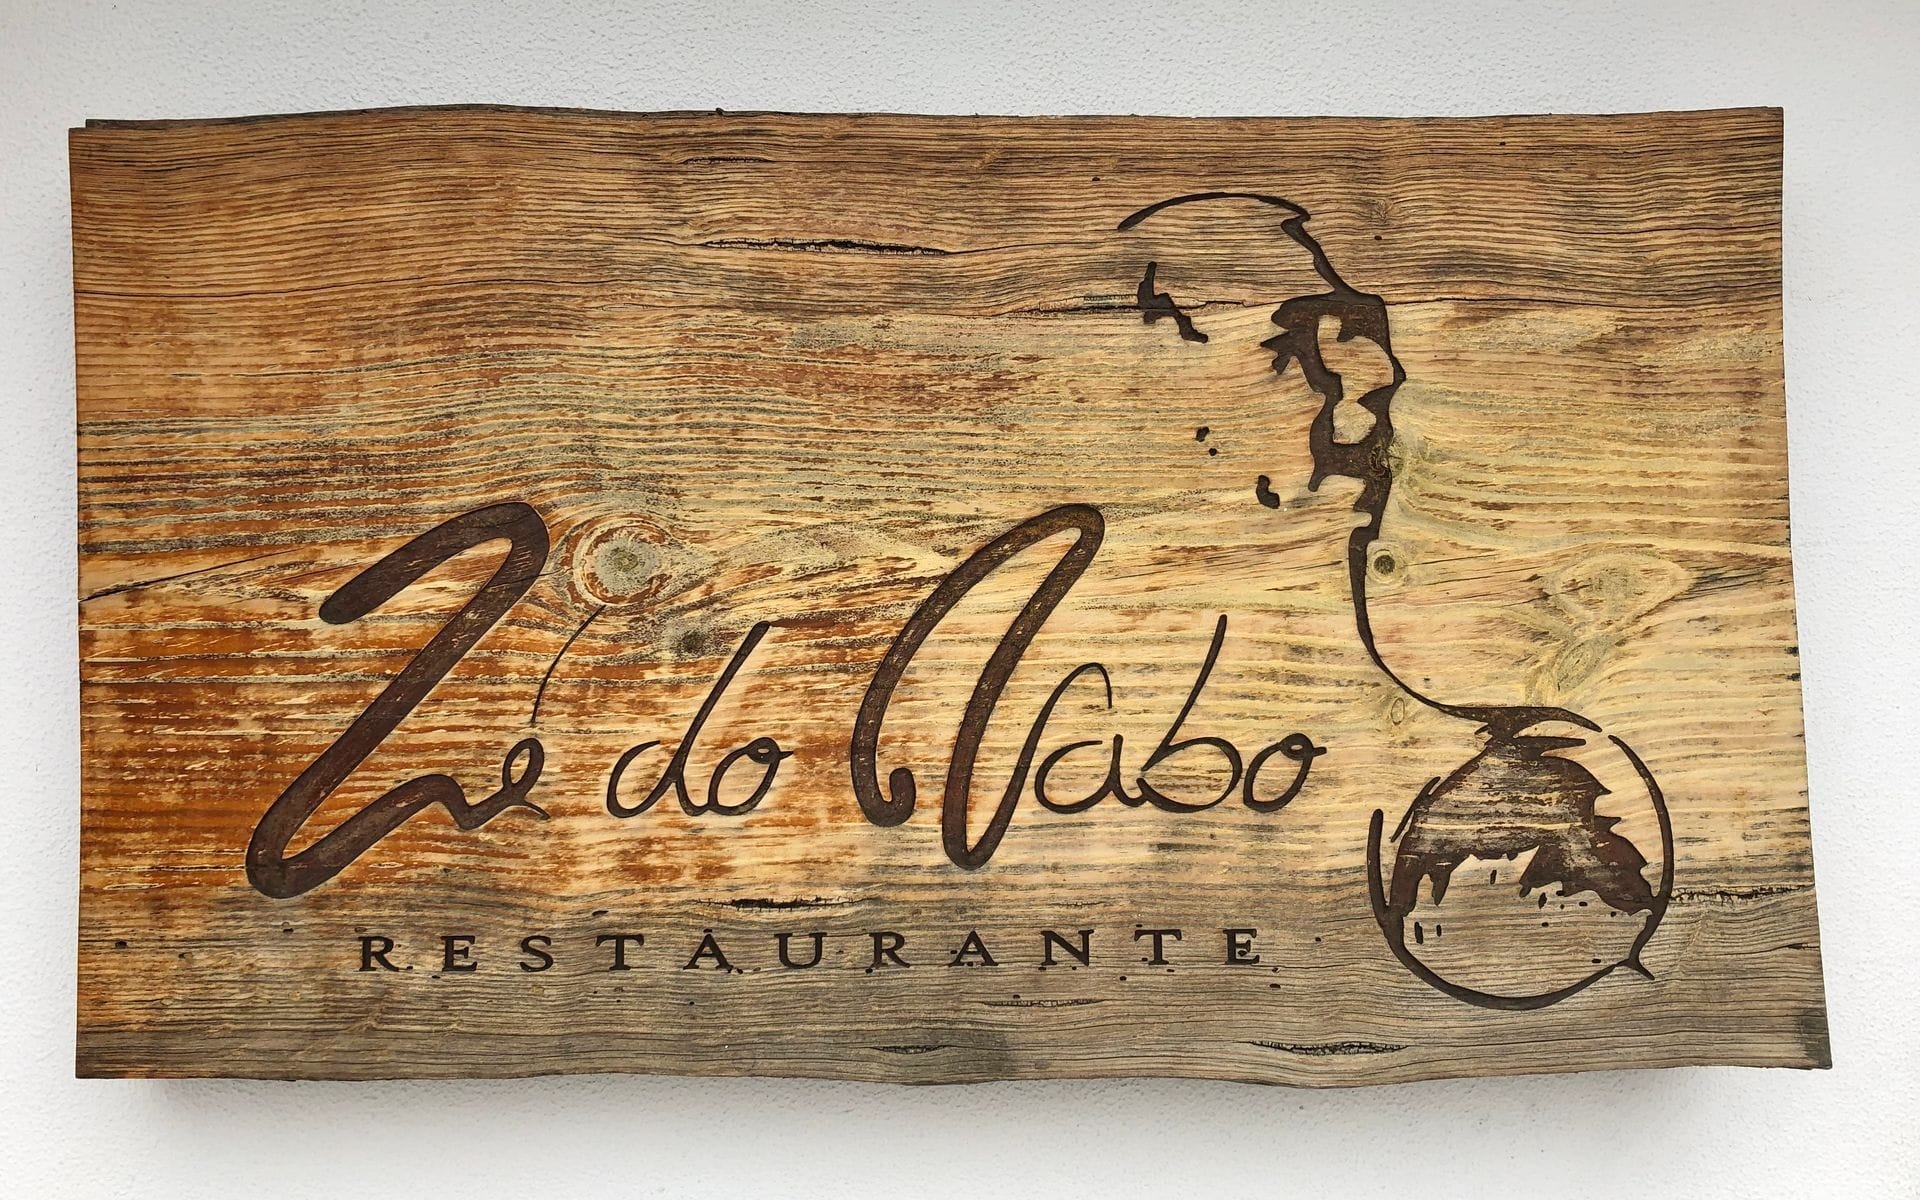 Restaurante Ze do Nabo